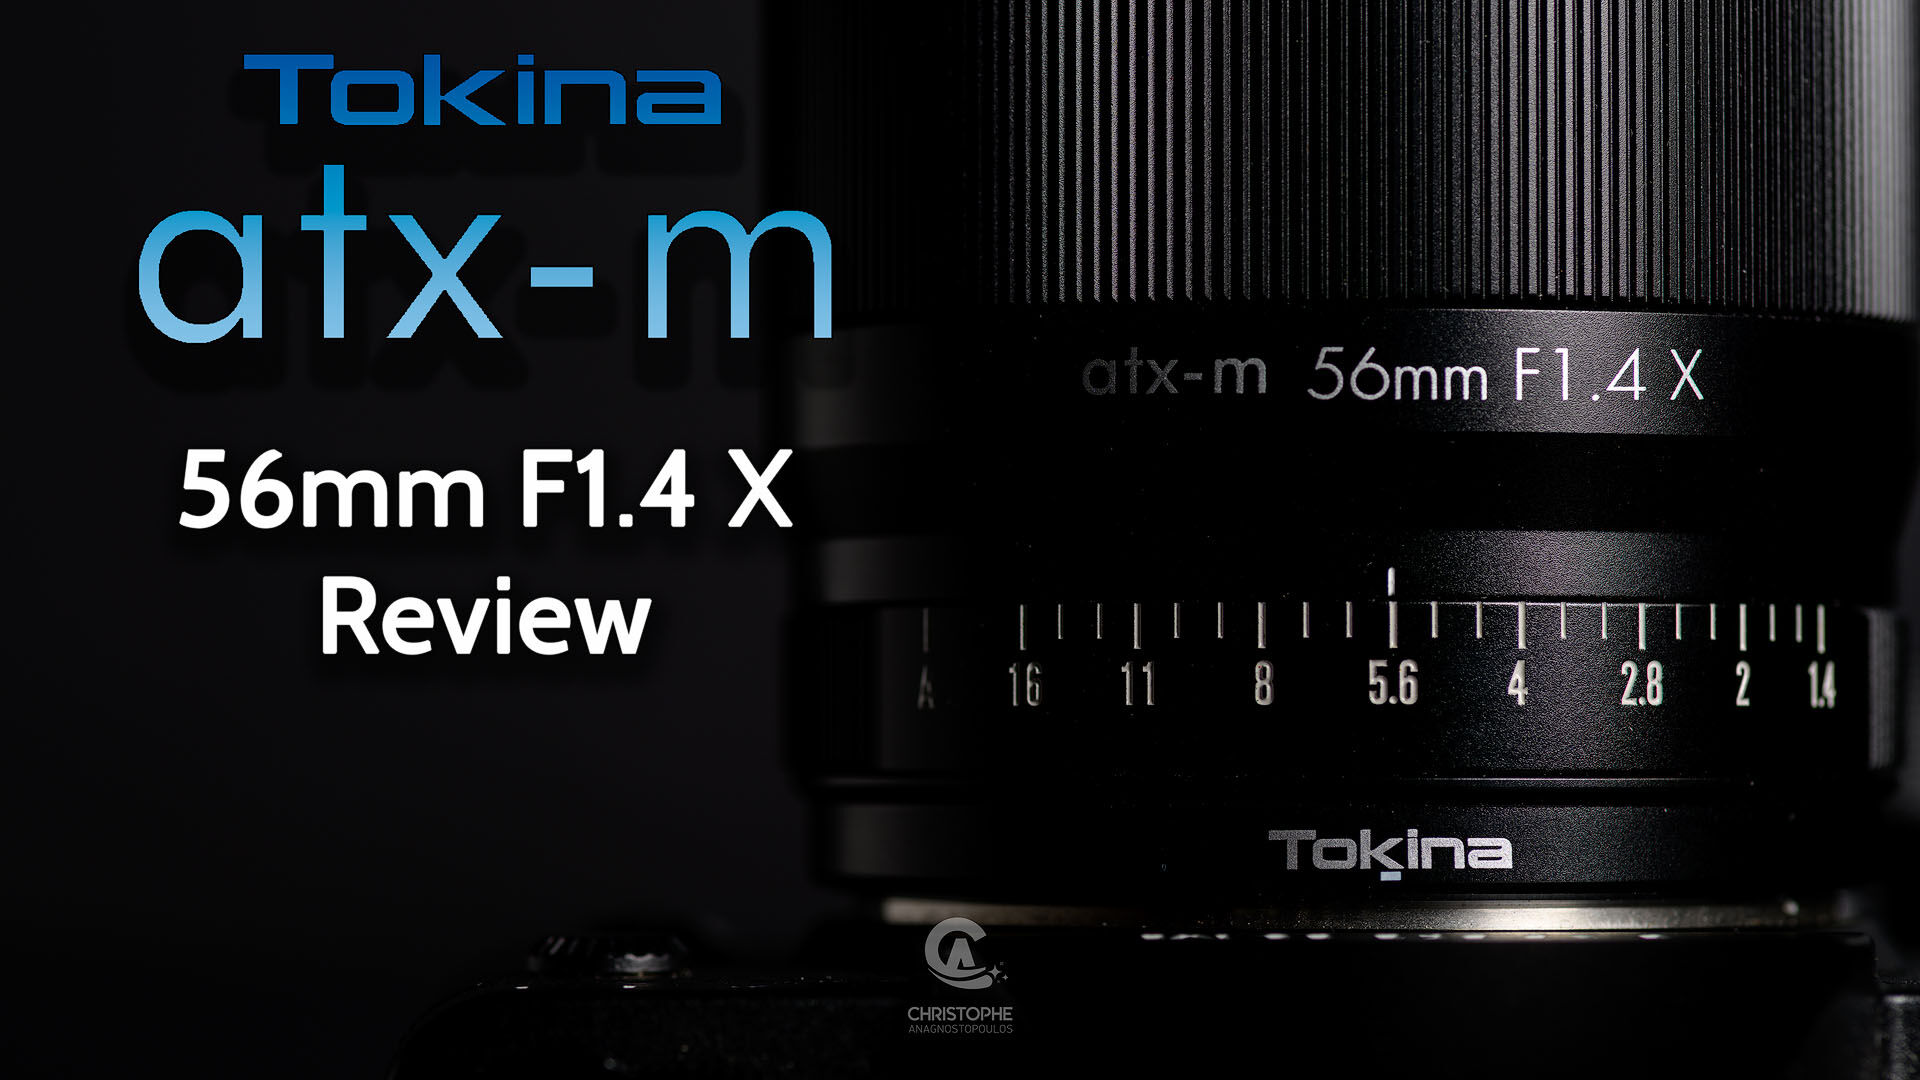 Tokina atx-m 56mm F1.4 X Lens Review